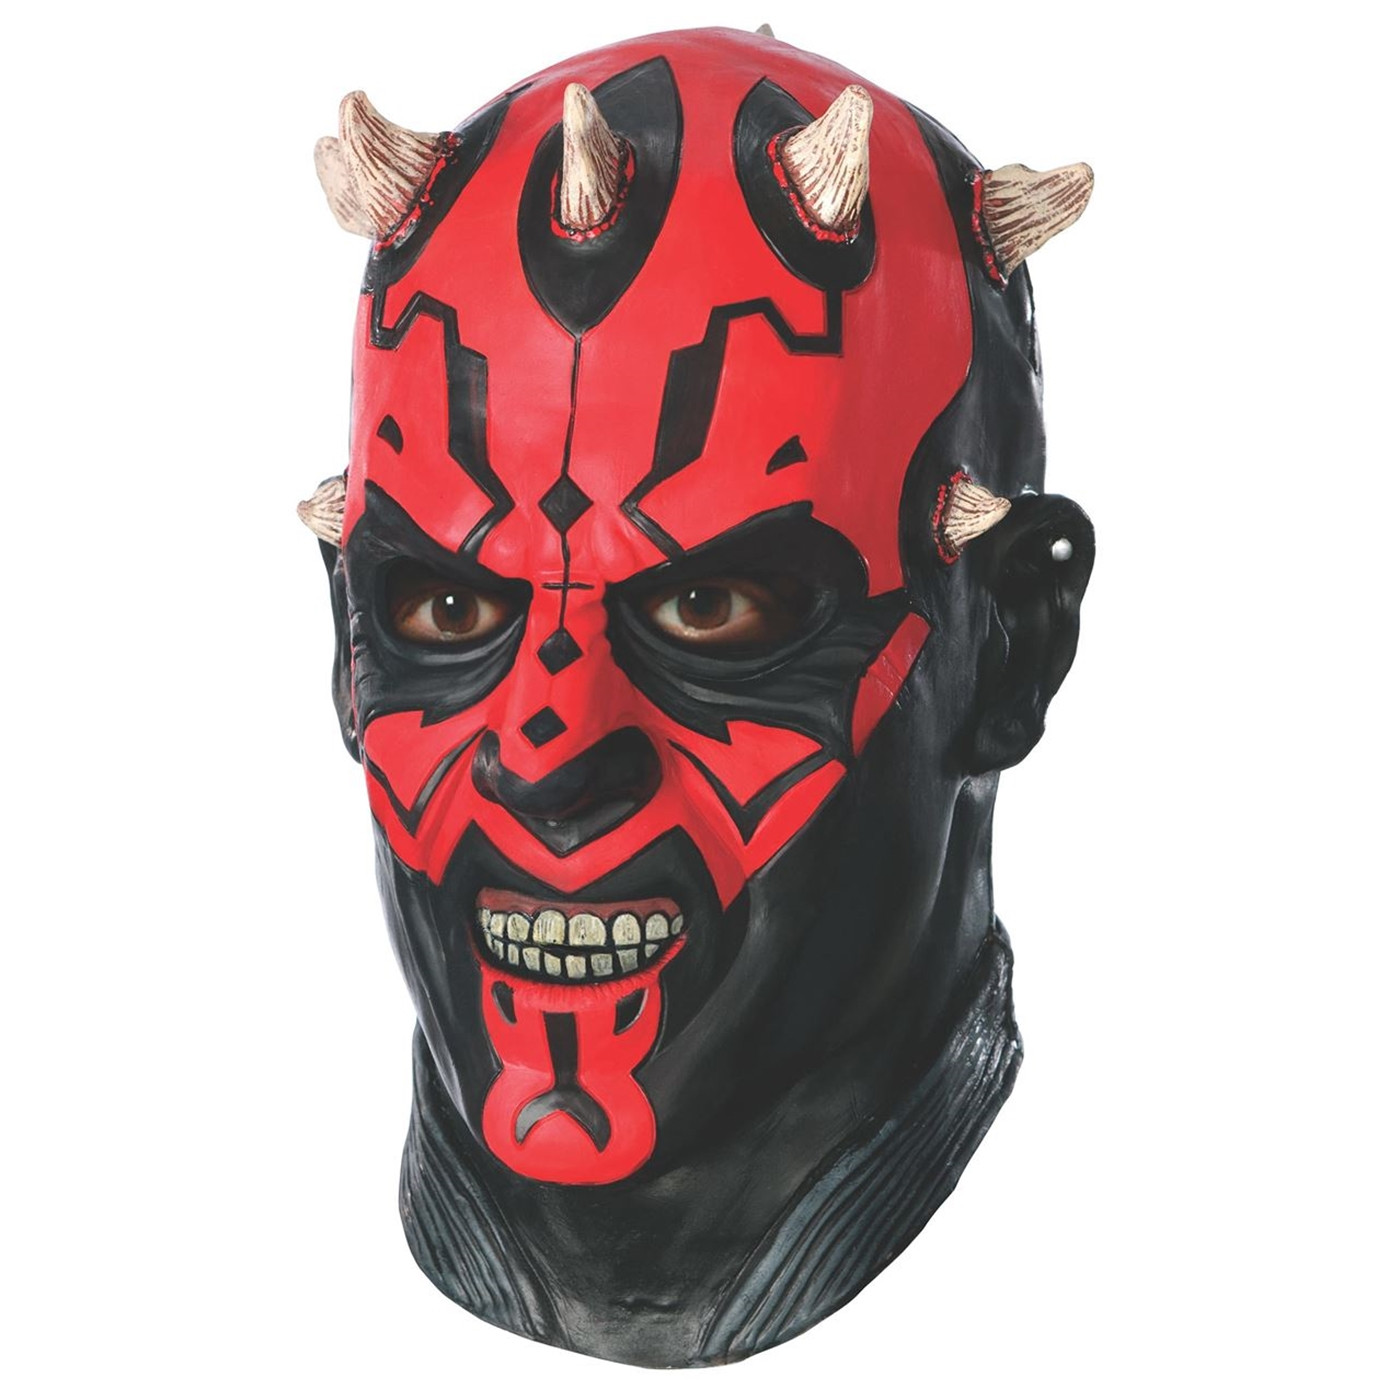 Star Wars Darth Maul Mask